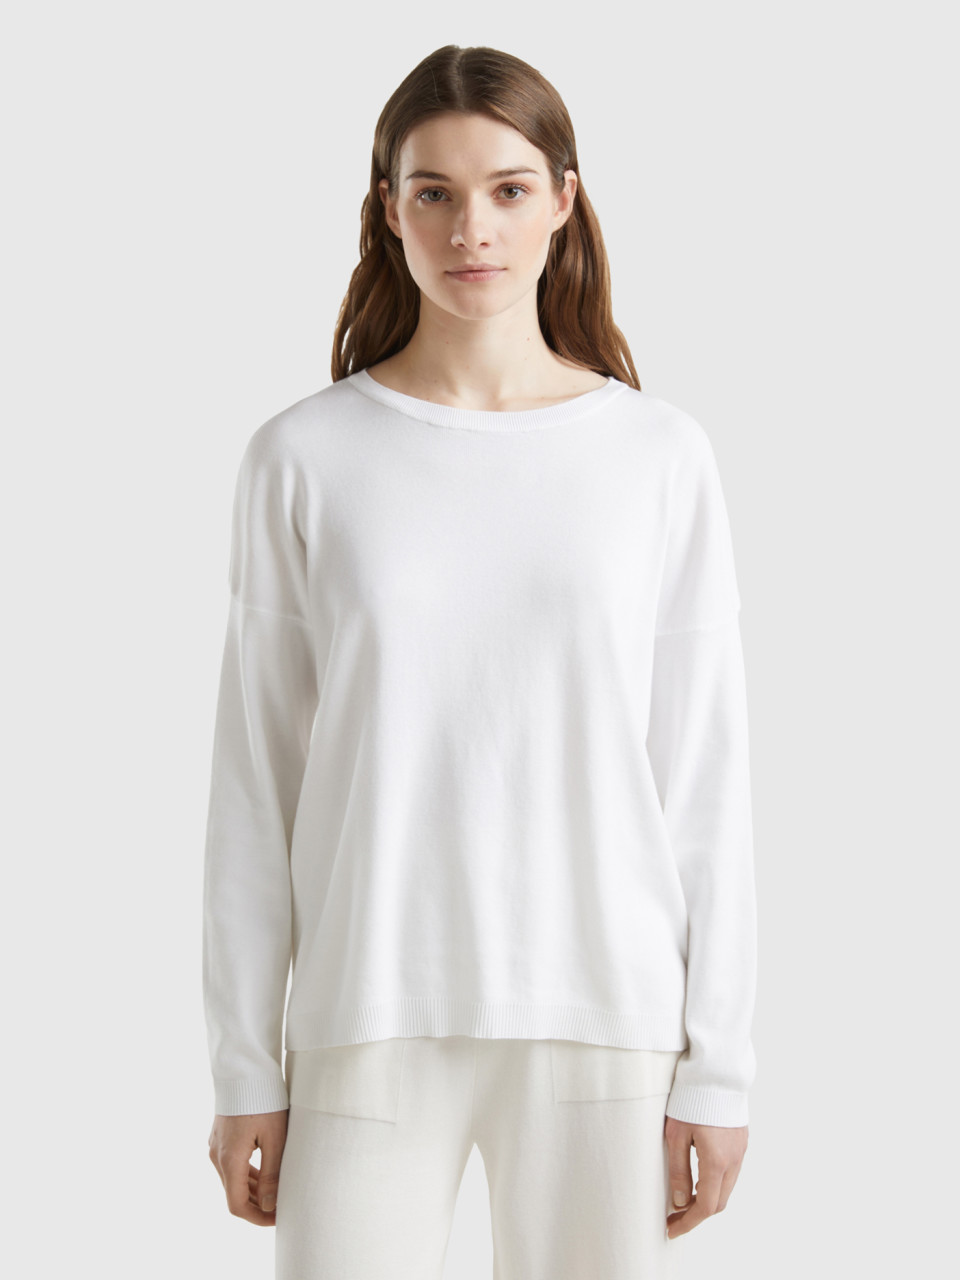 Benetton, Cotton Sweater With Round Neck, White, Women